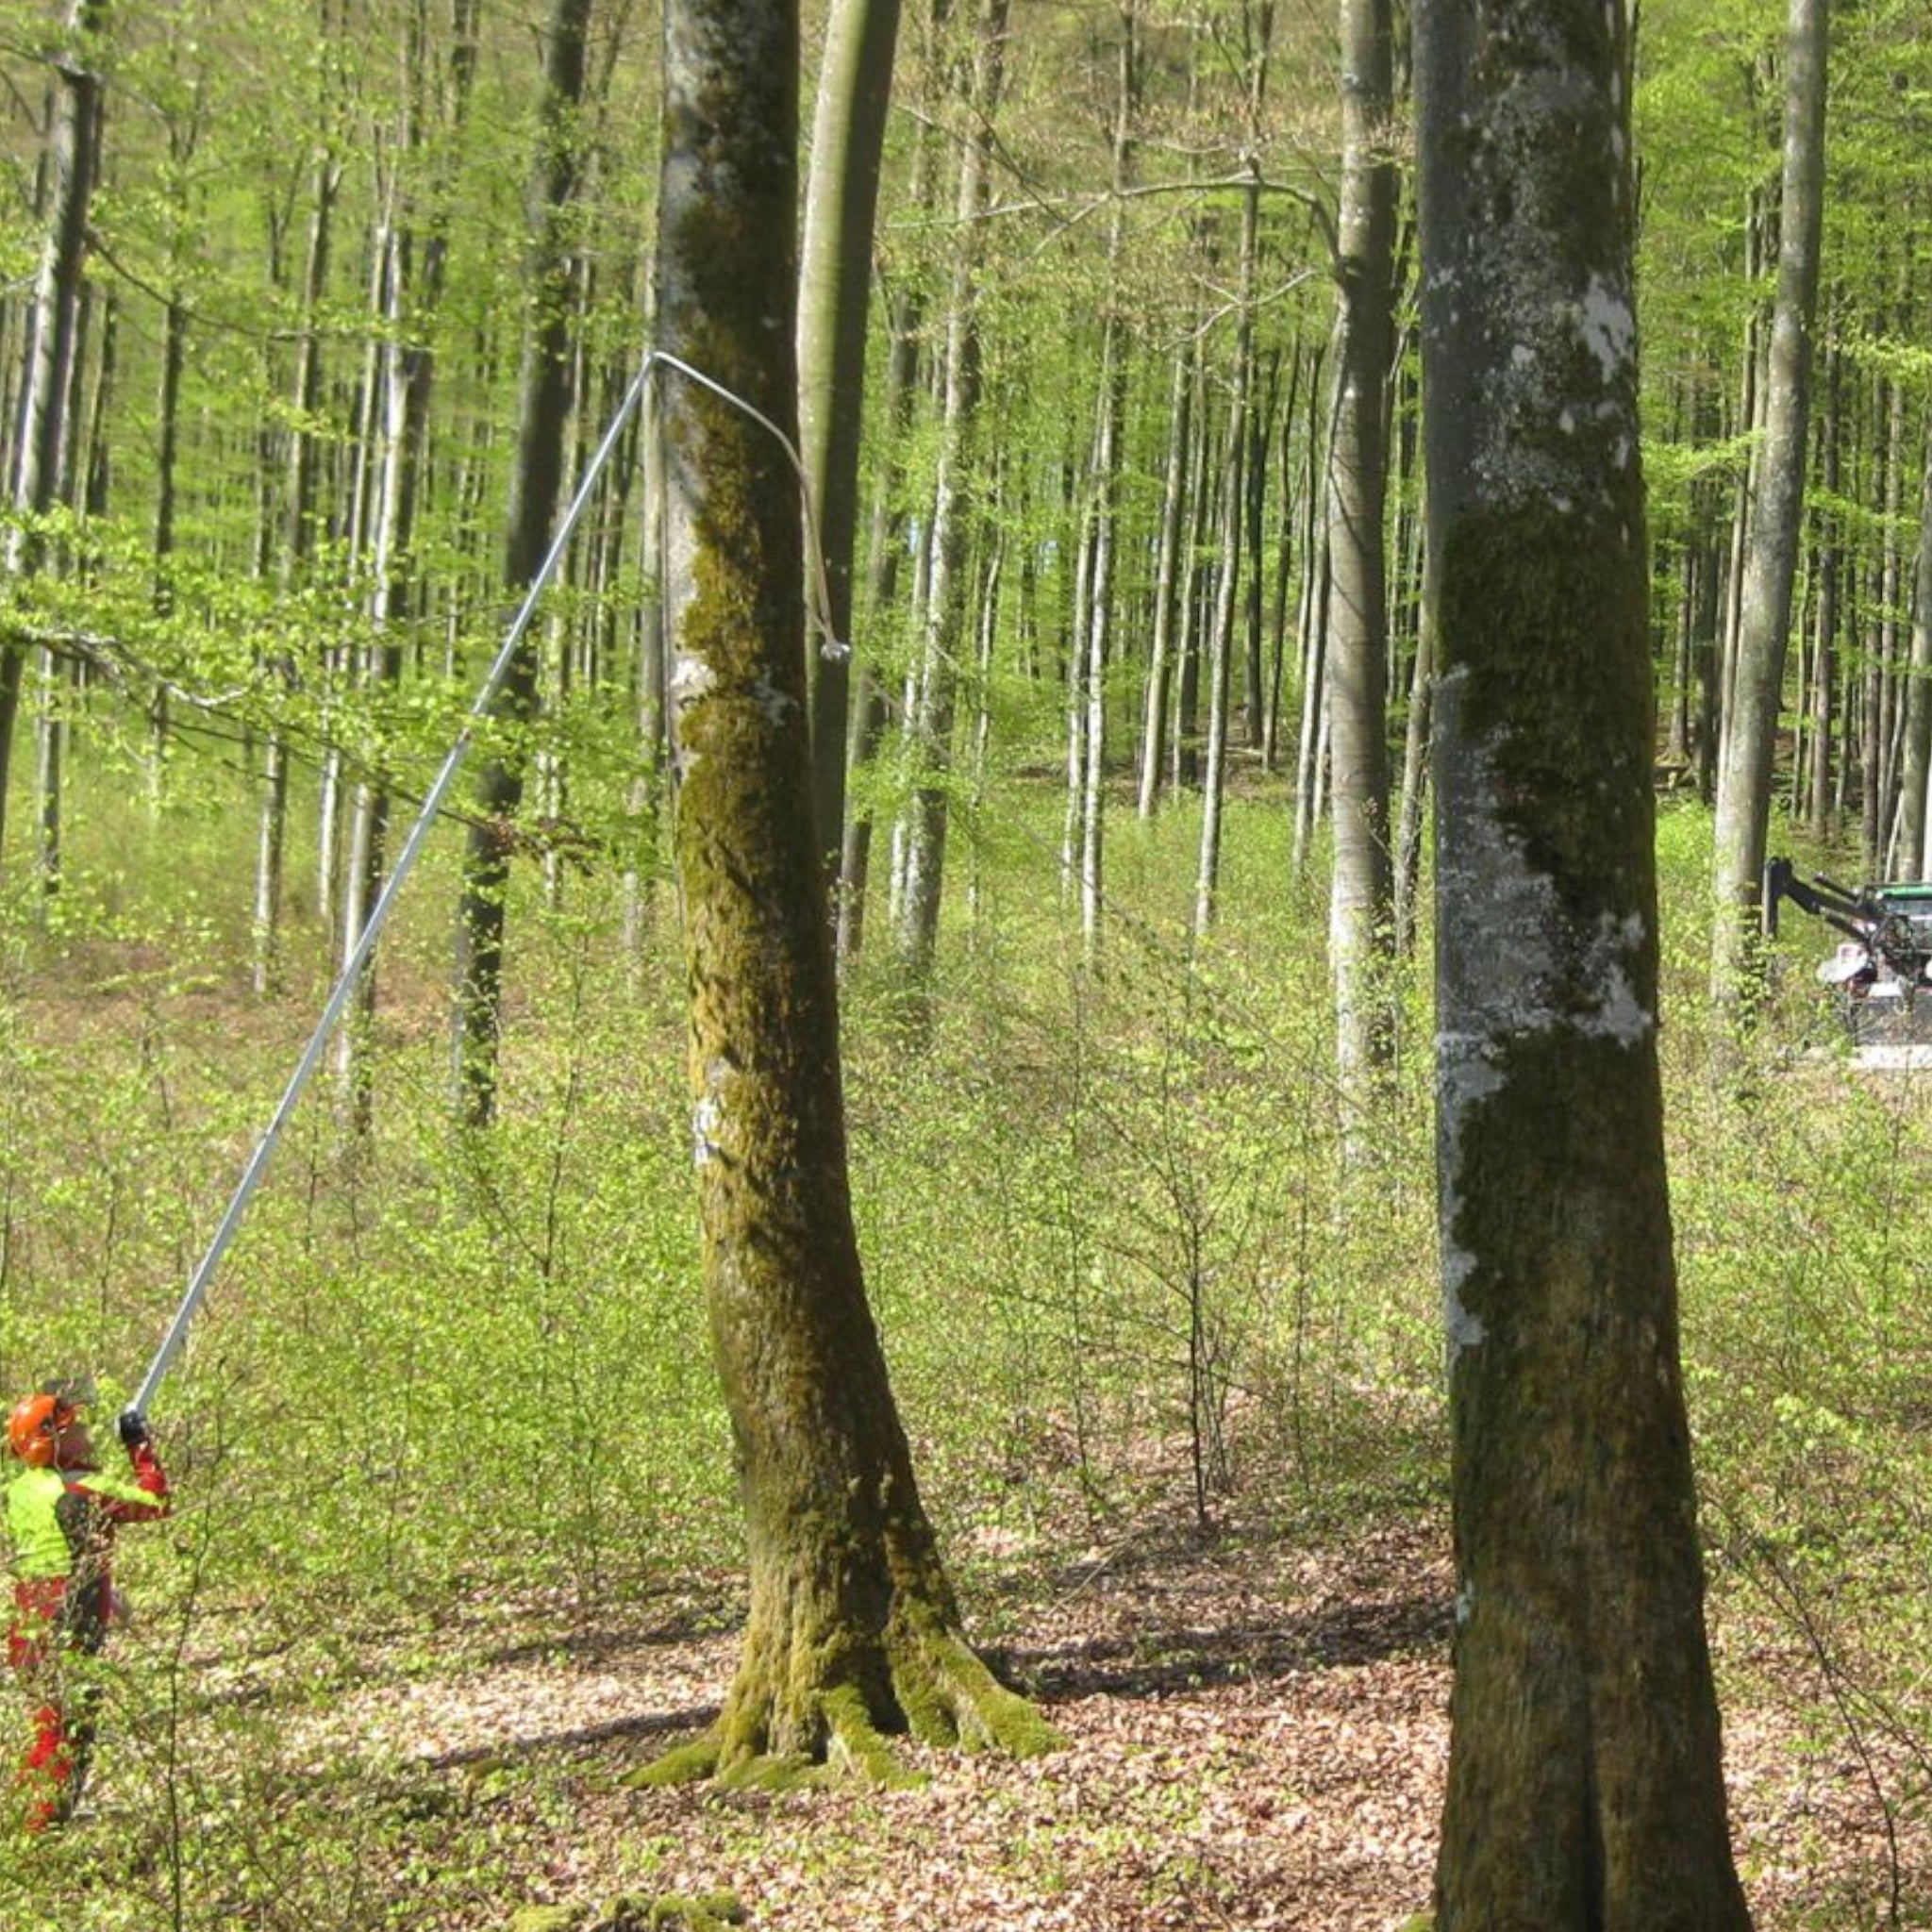 Anwendnungsbild der Königsbronner Anschlagtechnik im Wald durch Werner K. vom Forst Bw. mit Teleskopstange, Baumzugseil und Winde im Hintergrund